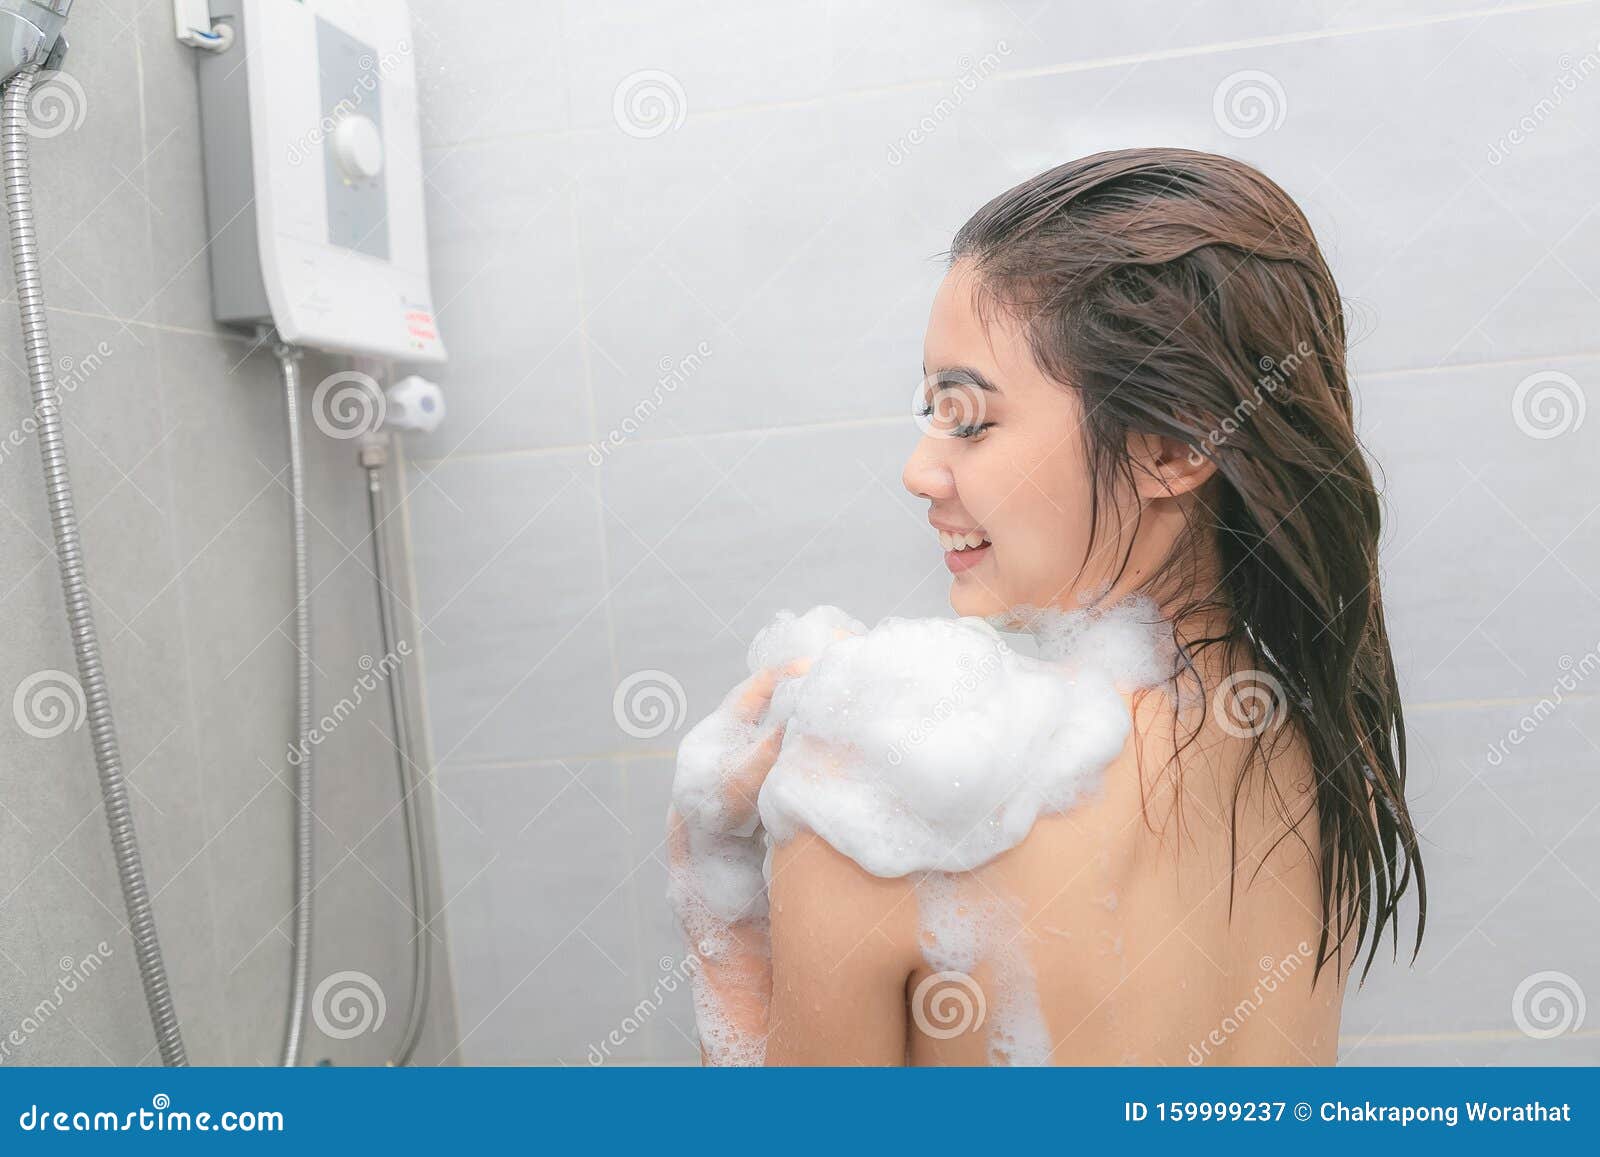 Принимает душ женщина в положении